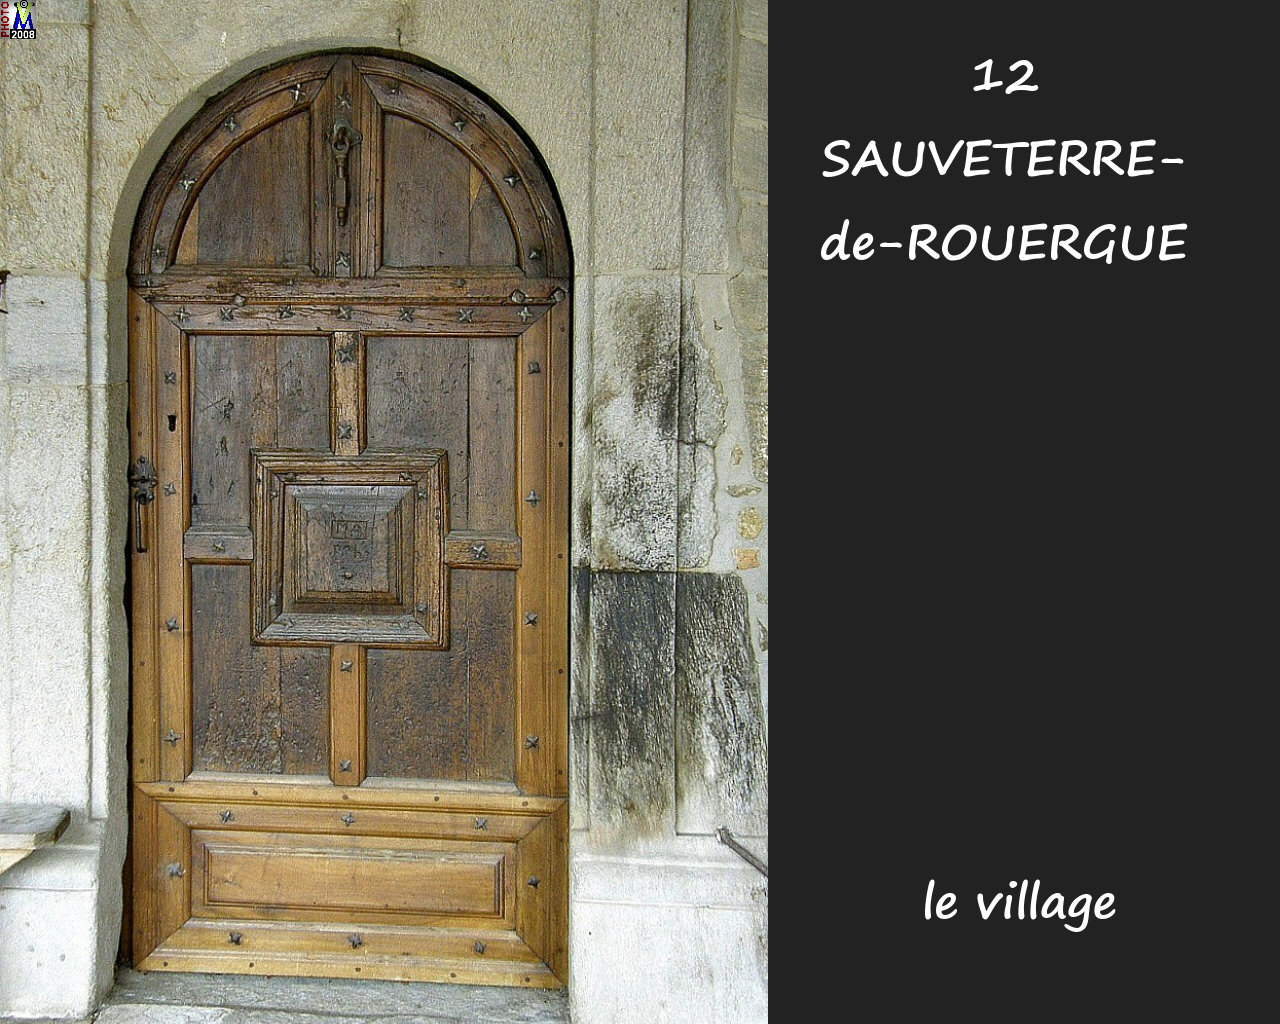 12SAUVETERRE-ROUERGUE_village_188.jpg